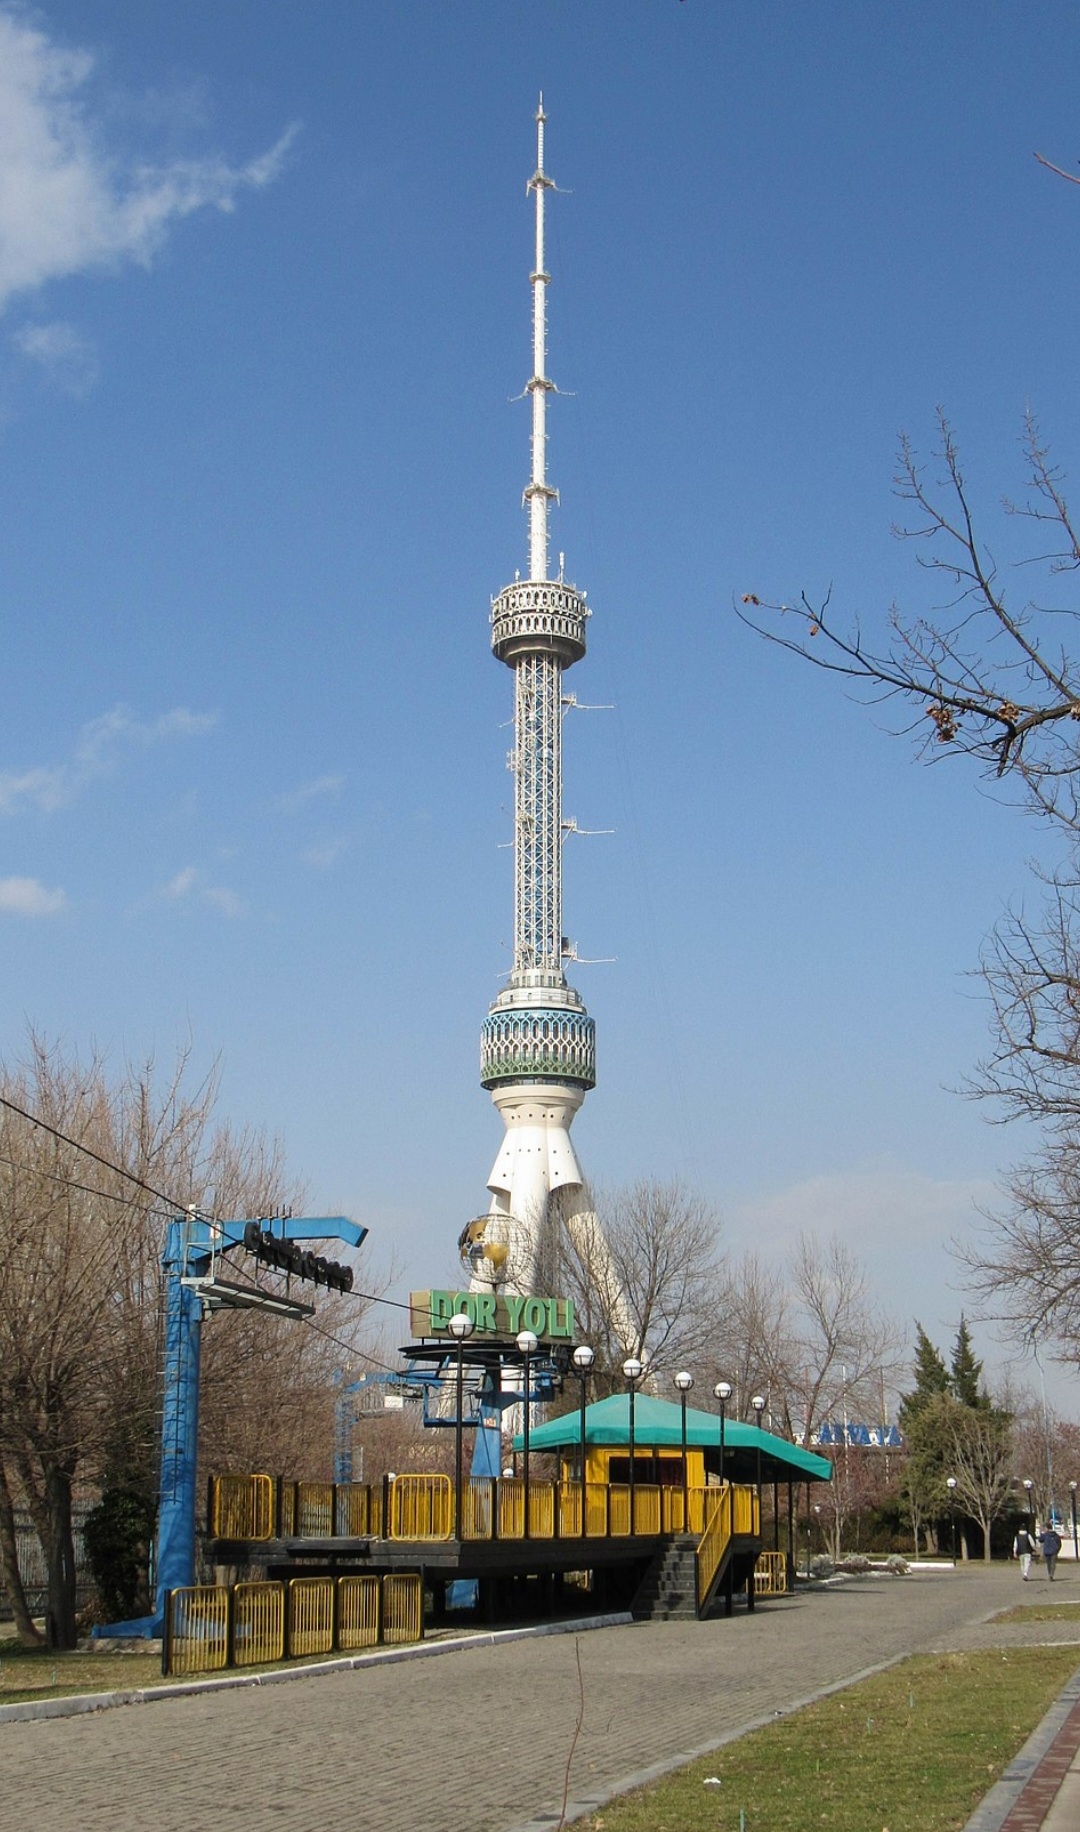 Tashkent Tower - 375 metros - Uzbequistão - Inaugurada em 1985, fica na cidade de Tashkent e é um dos pontos turísticos mais visitados da cidade. Reprodução: Flipar